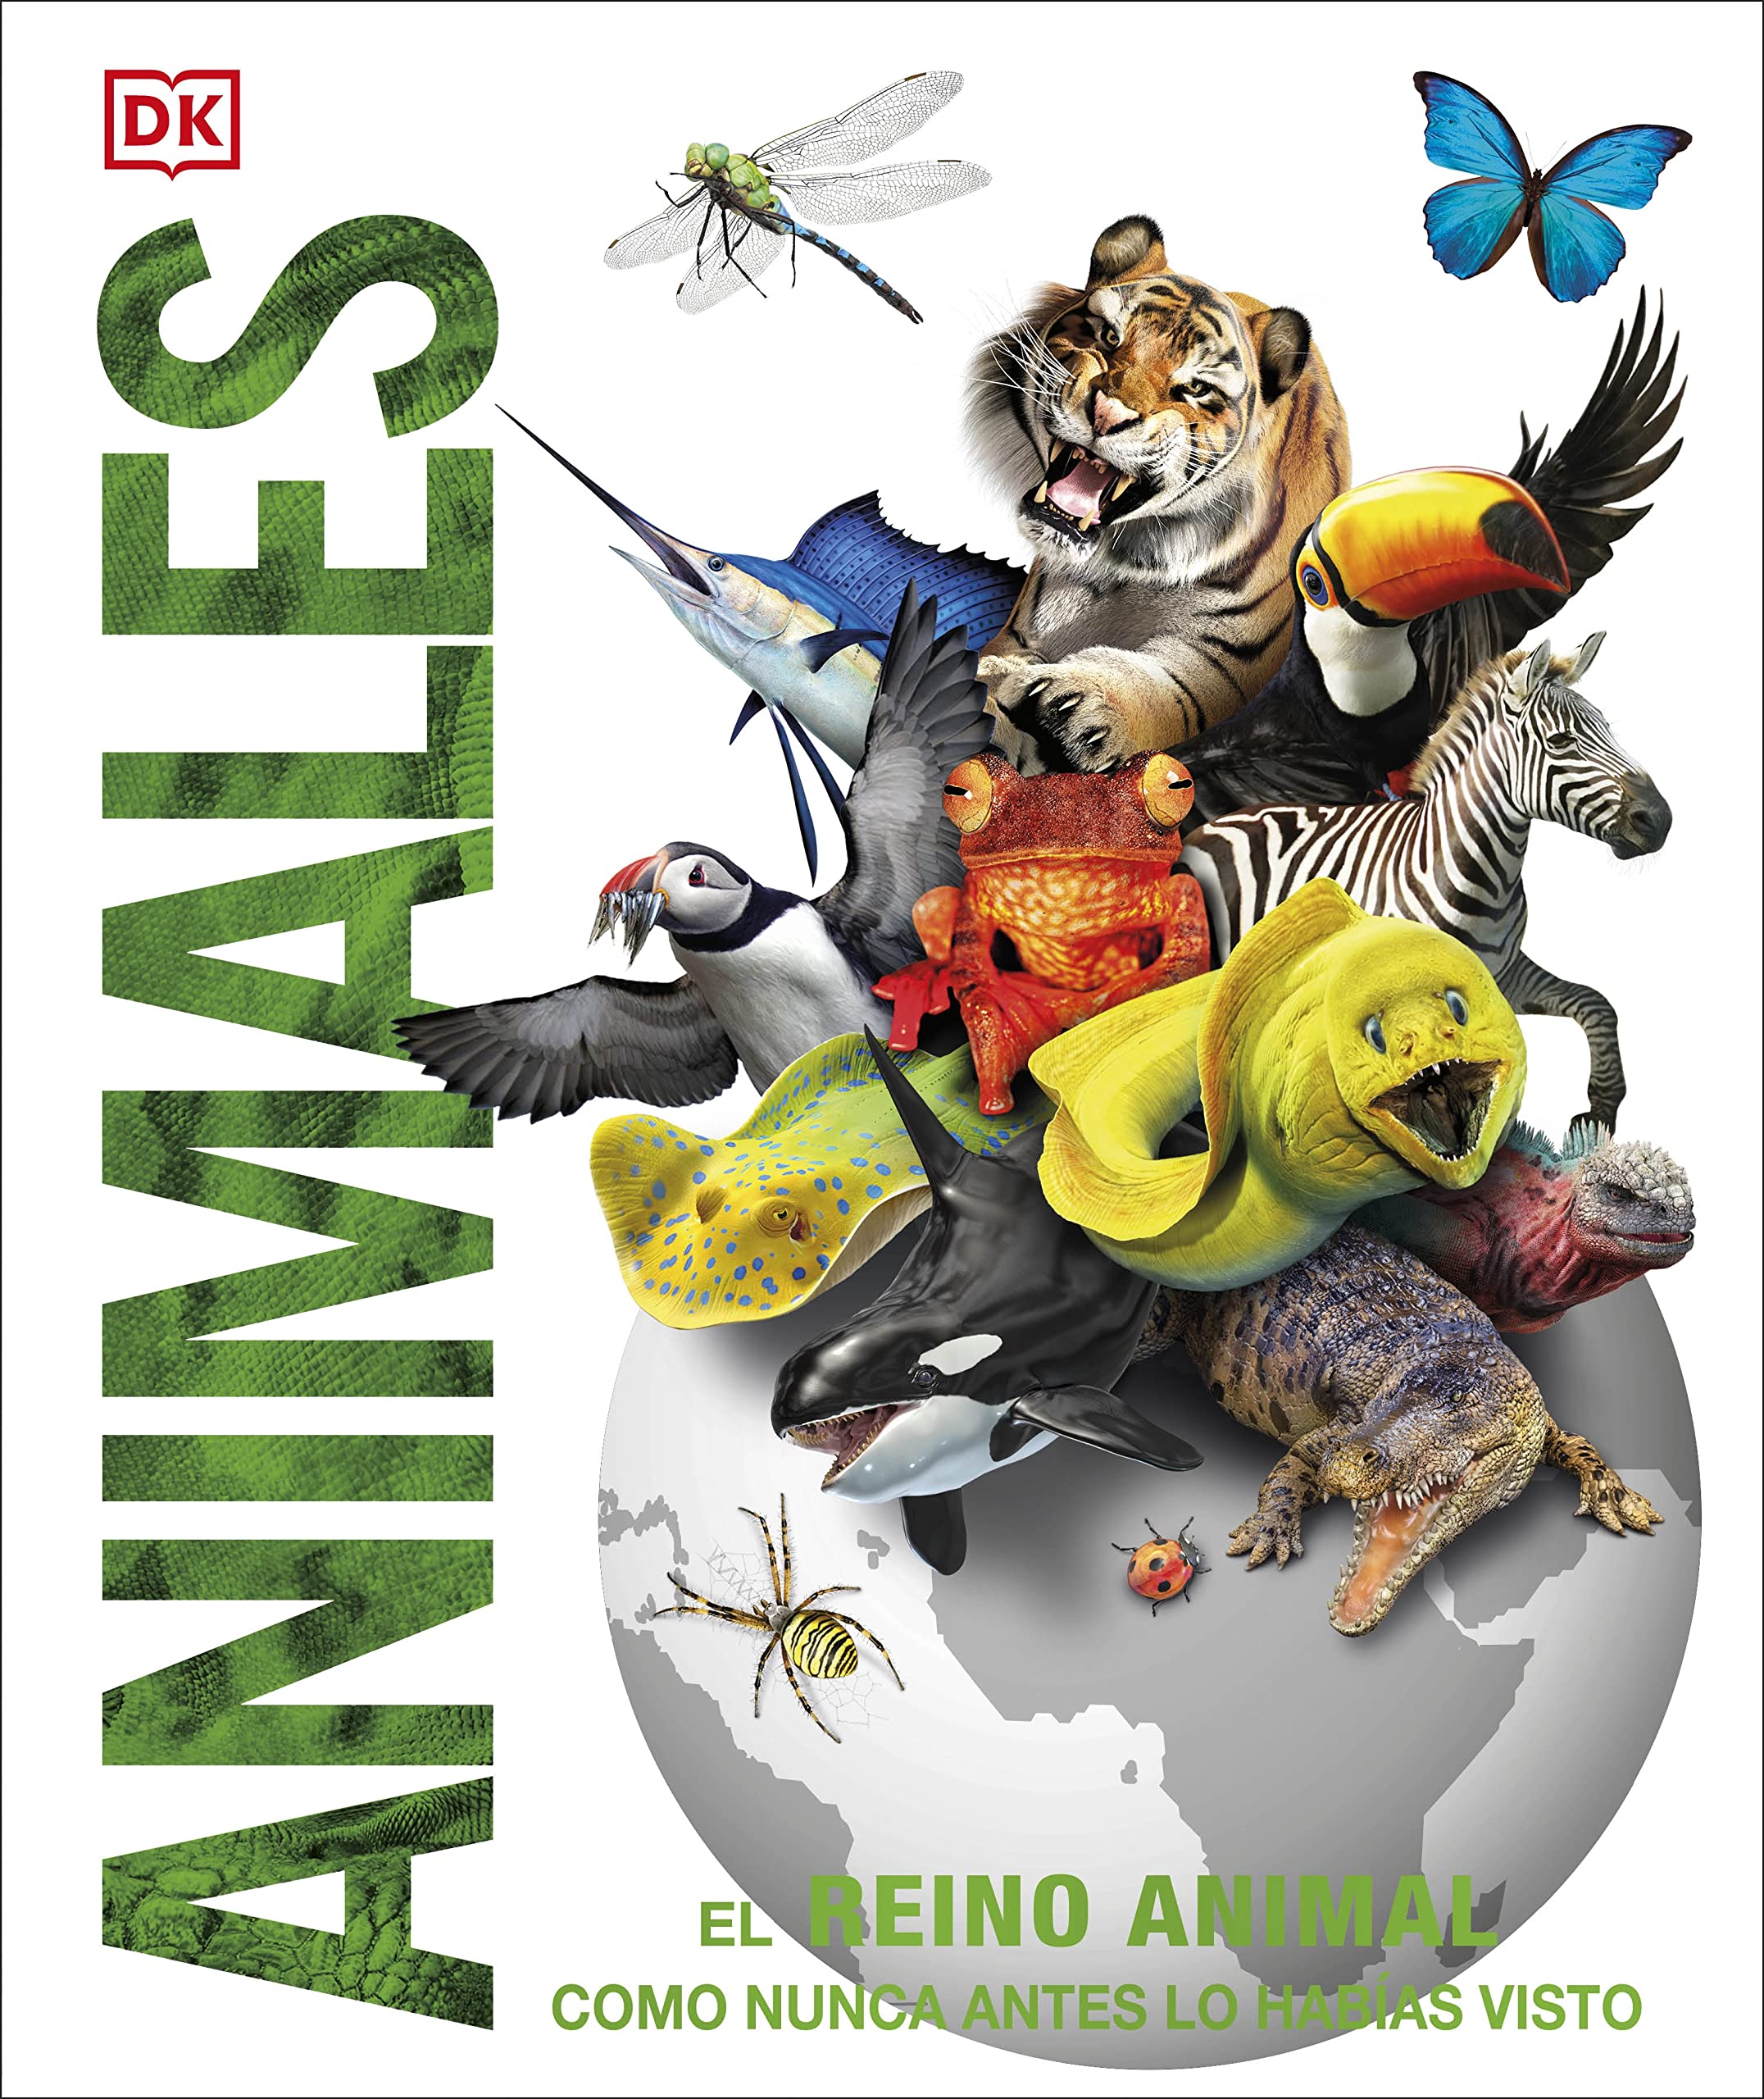 Animales (Knowledge Encyclopedia Animal!): El reino animal como nunca lo habías visto (DK Knowledge Encyclopedias) (Spanish Edition)